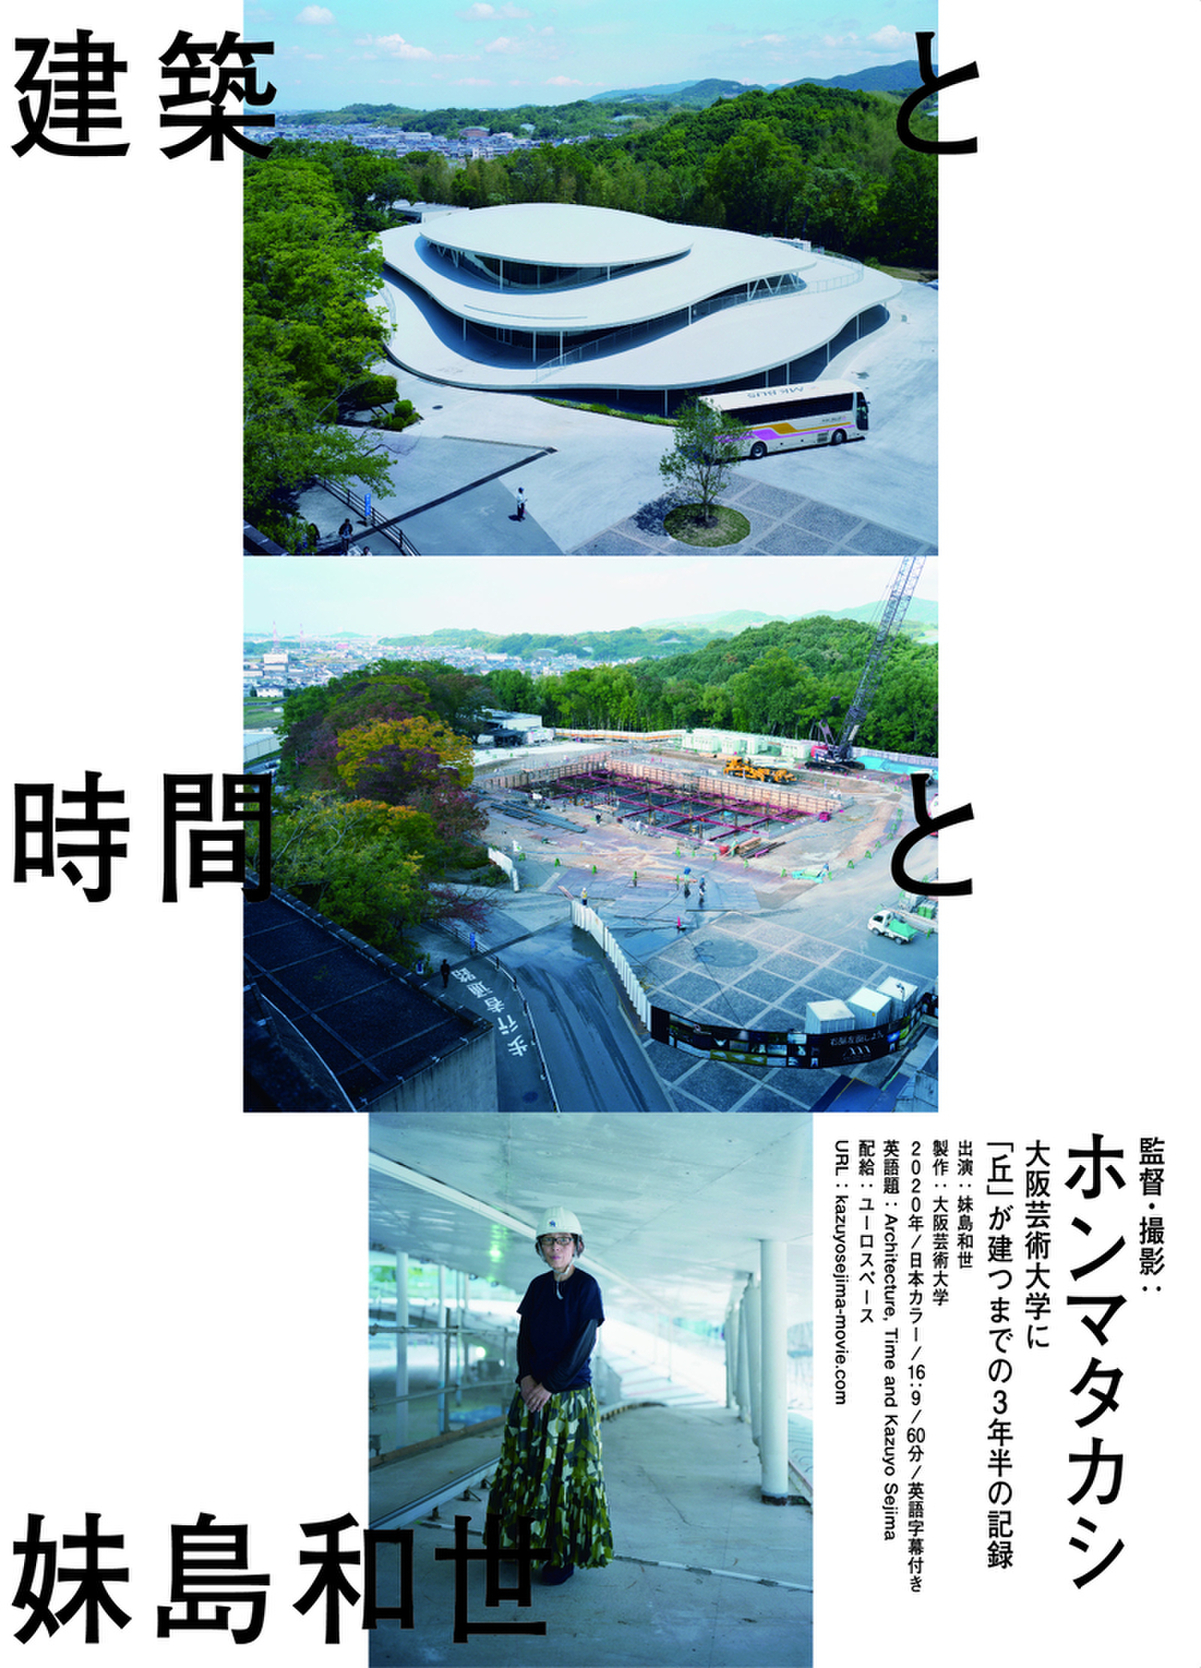 妹島和世のドキュメンタリー公開 ホンマタカシが監督、大阪芸術大学の